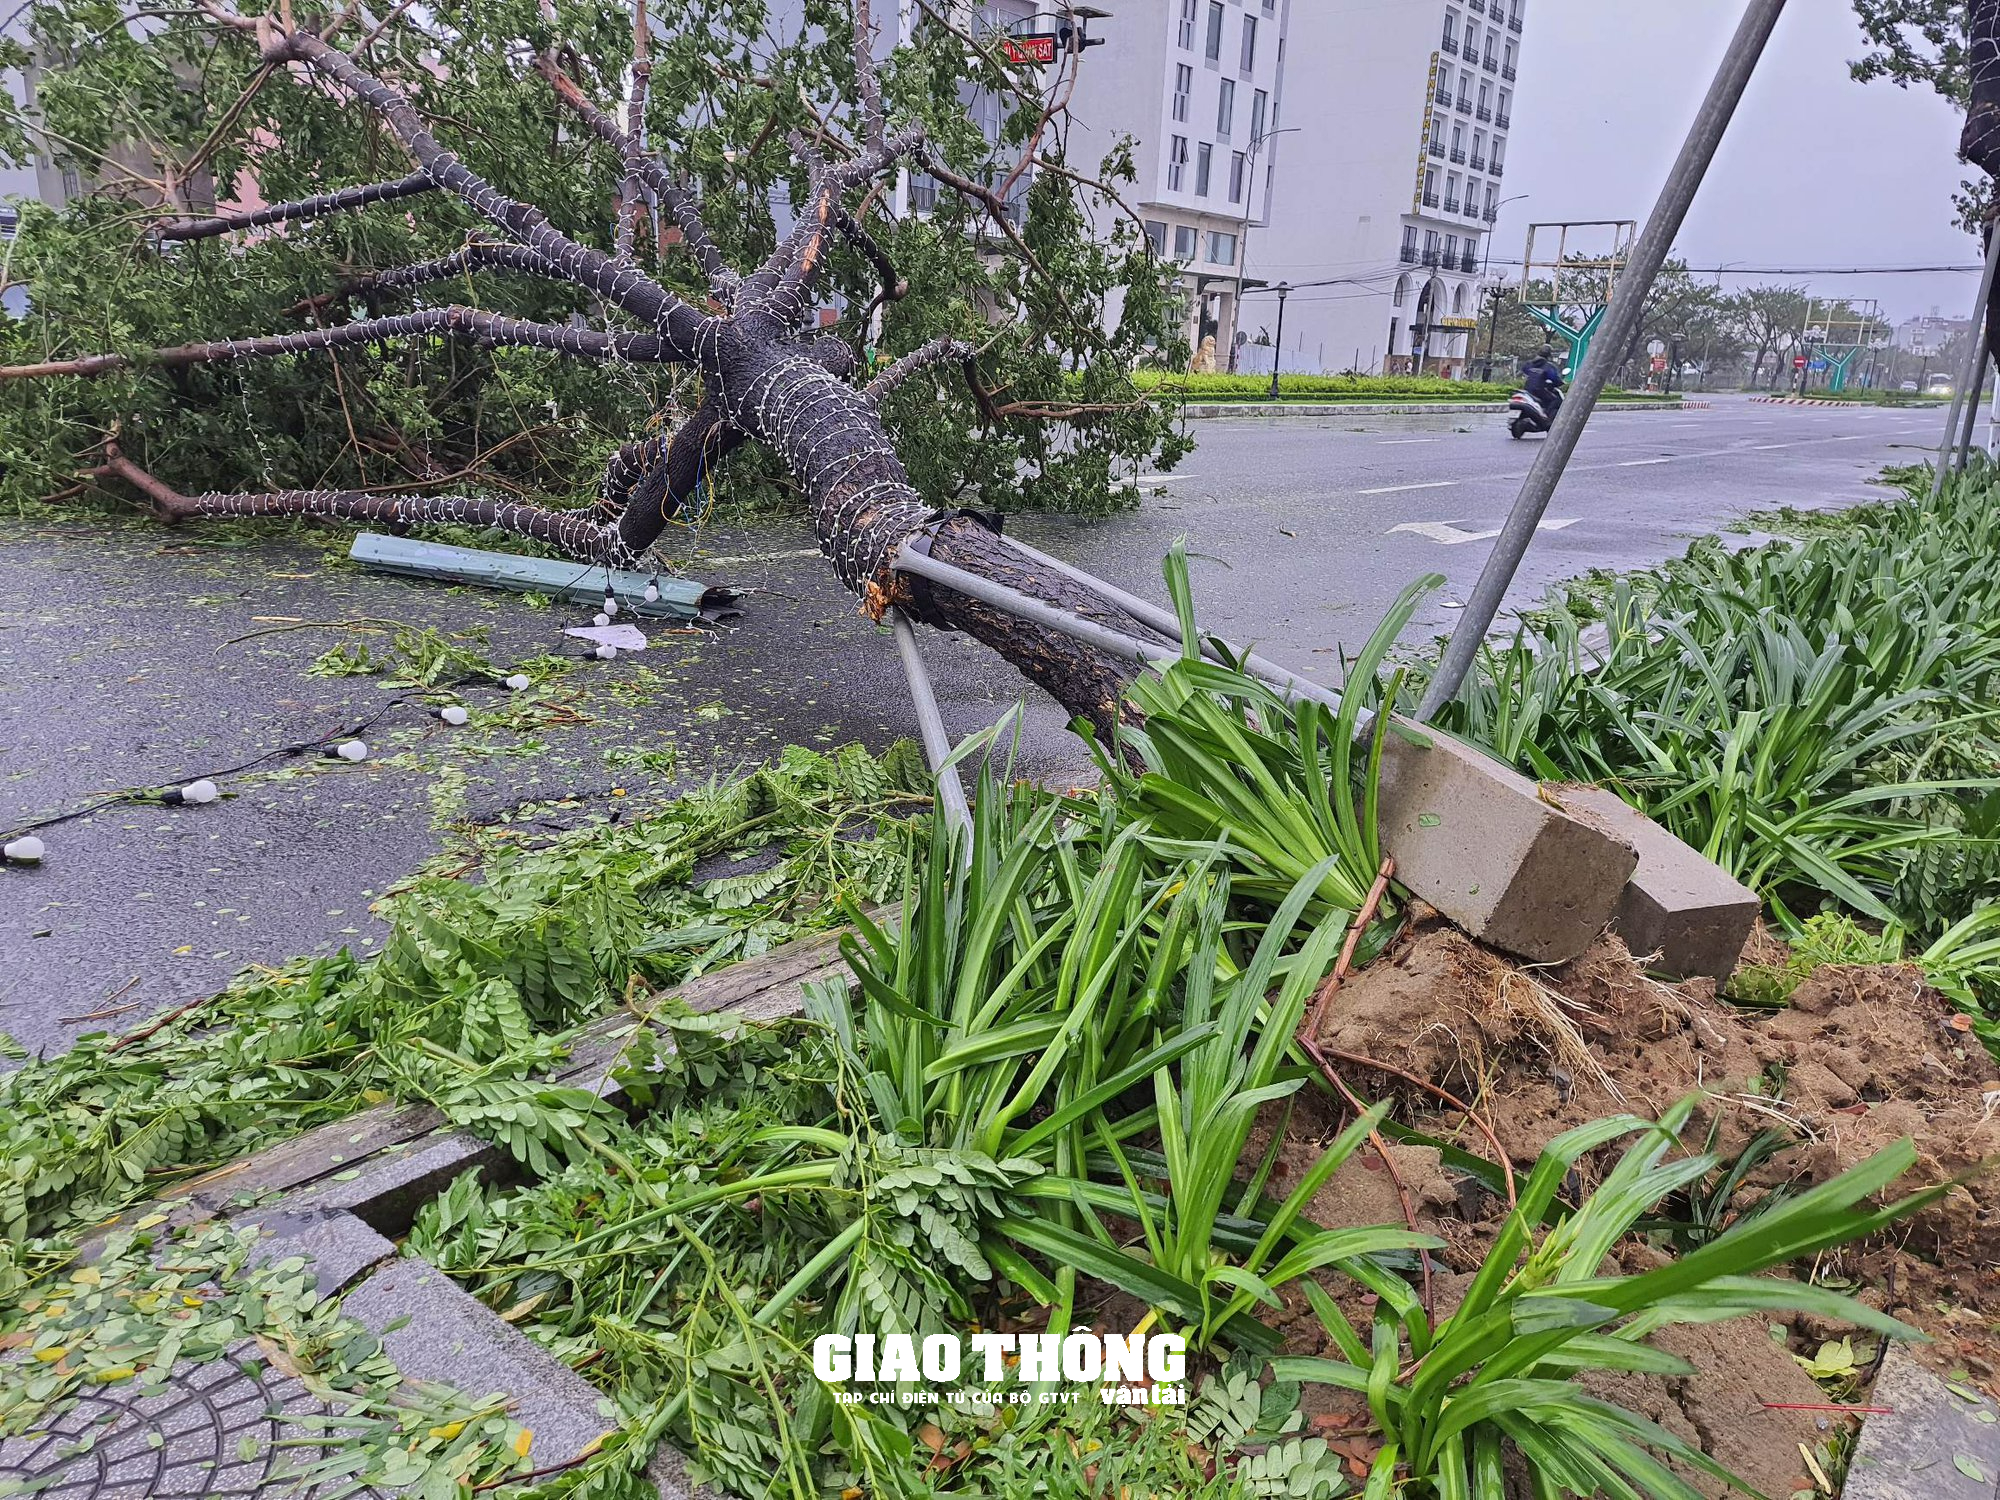 Ghi ở tâm bão Đà Nẵng-Quảng Nam: Cây xanh ngã đổ la liệt, gây ách tắc giao thông - Ảnh 17.